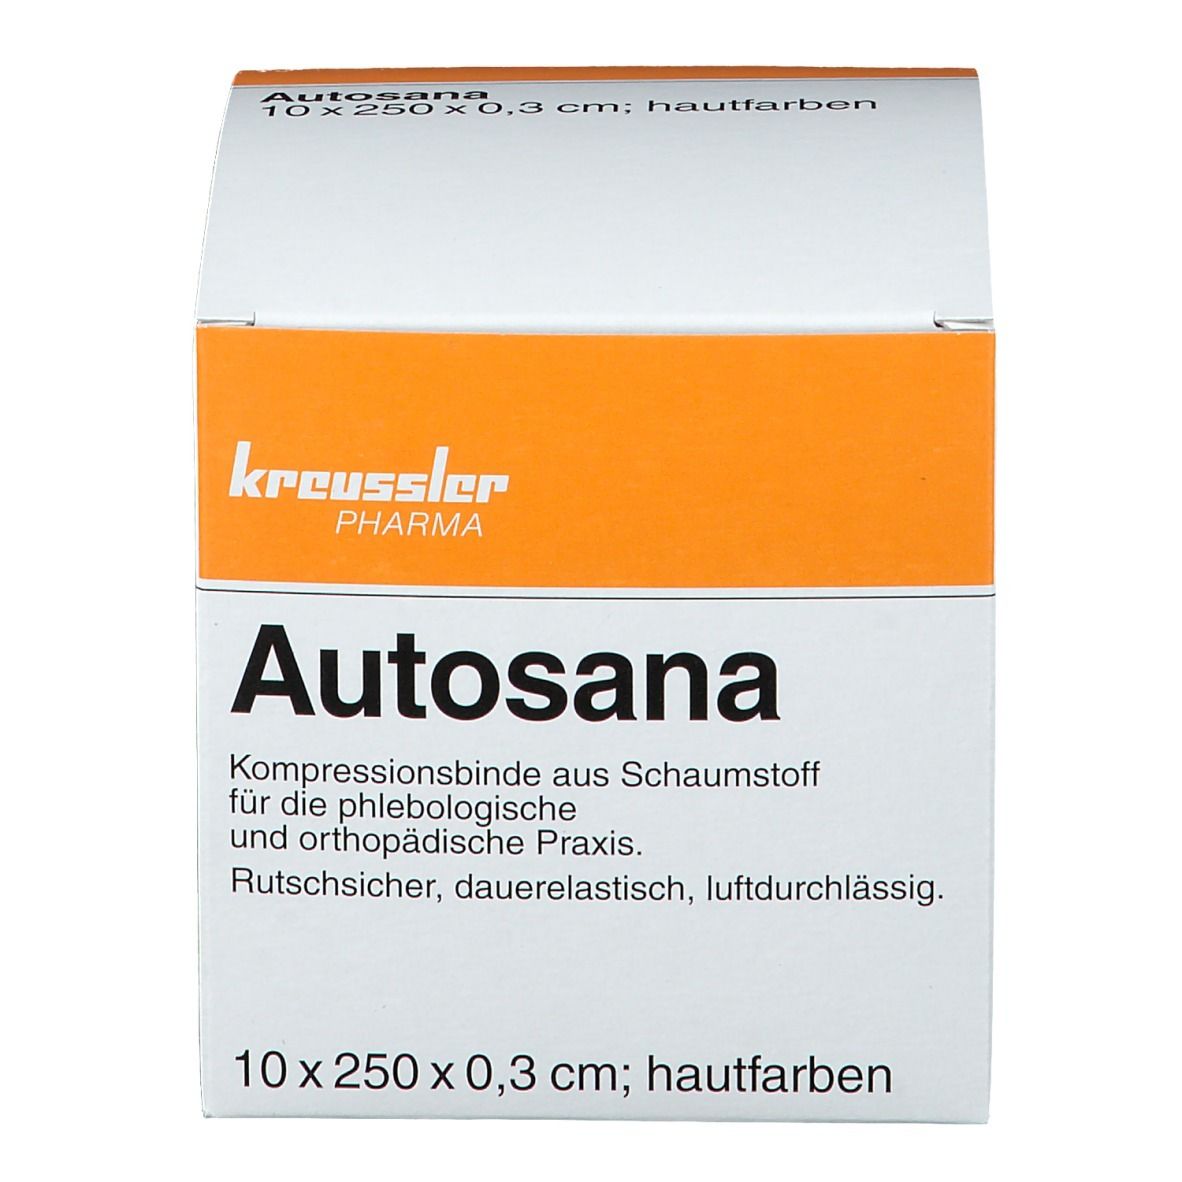 Autosana Kompressionsbinde aus Schaumstoff 10 cm x 2,5 m x 0,3 cm hautfarbend